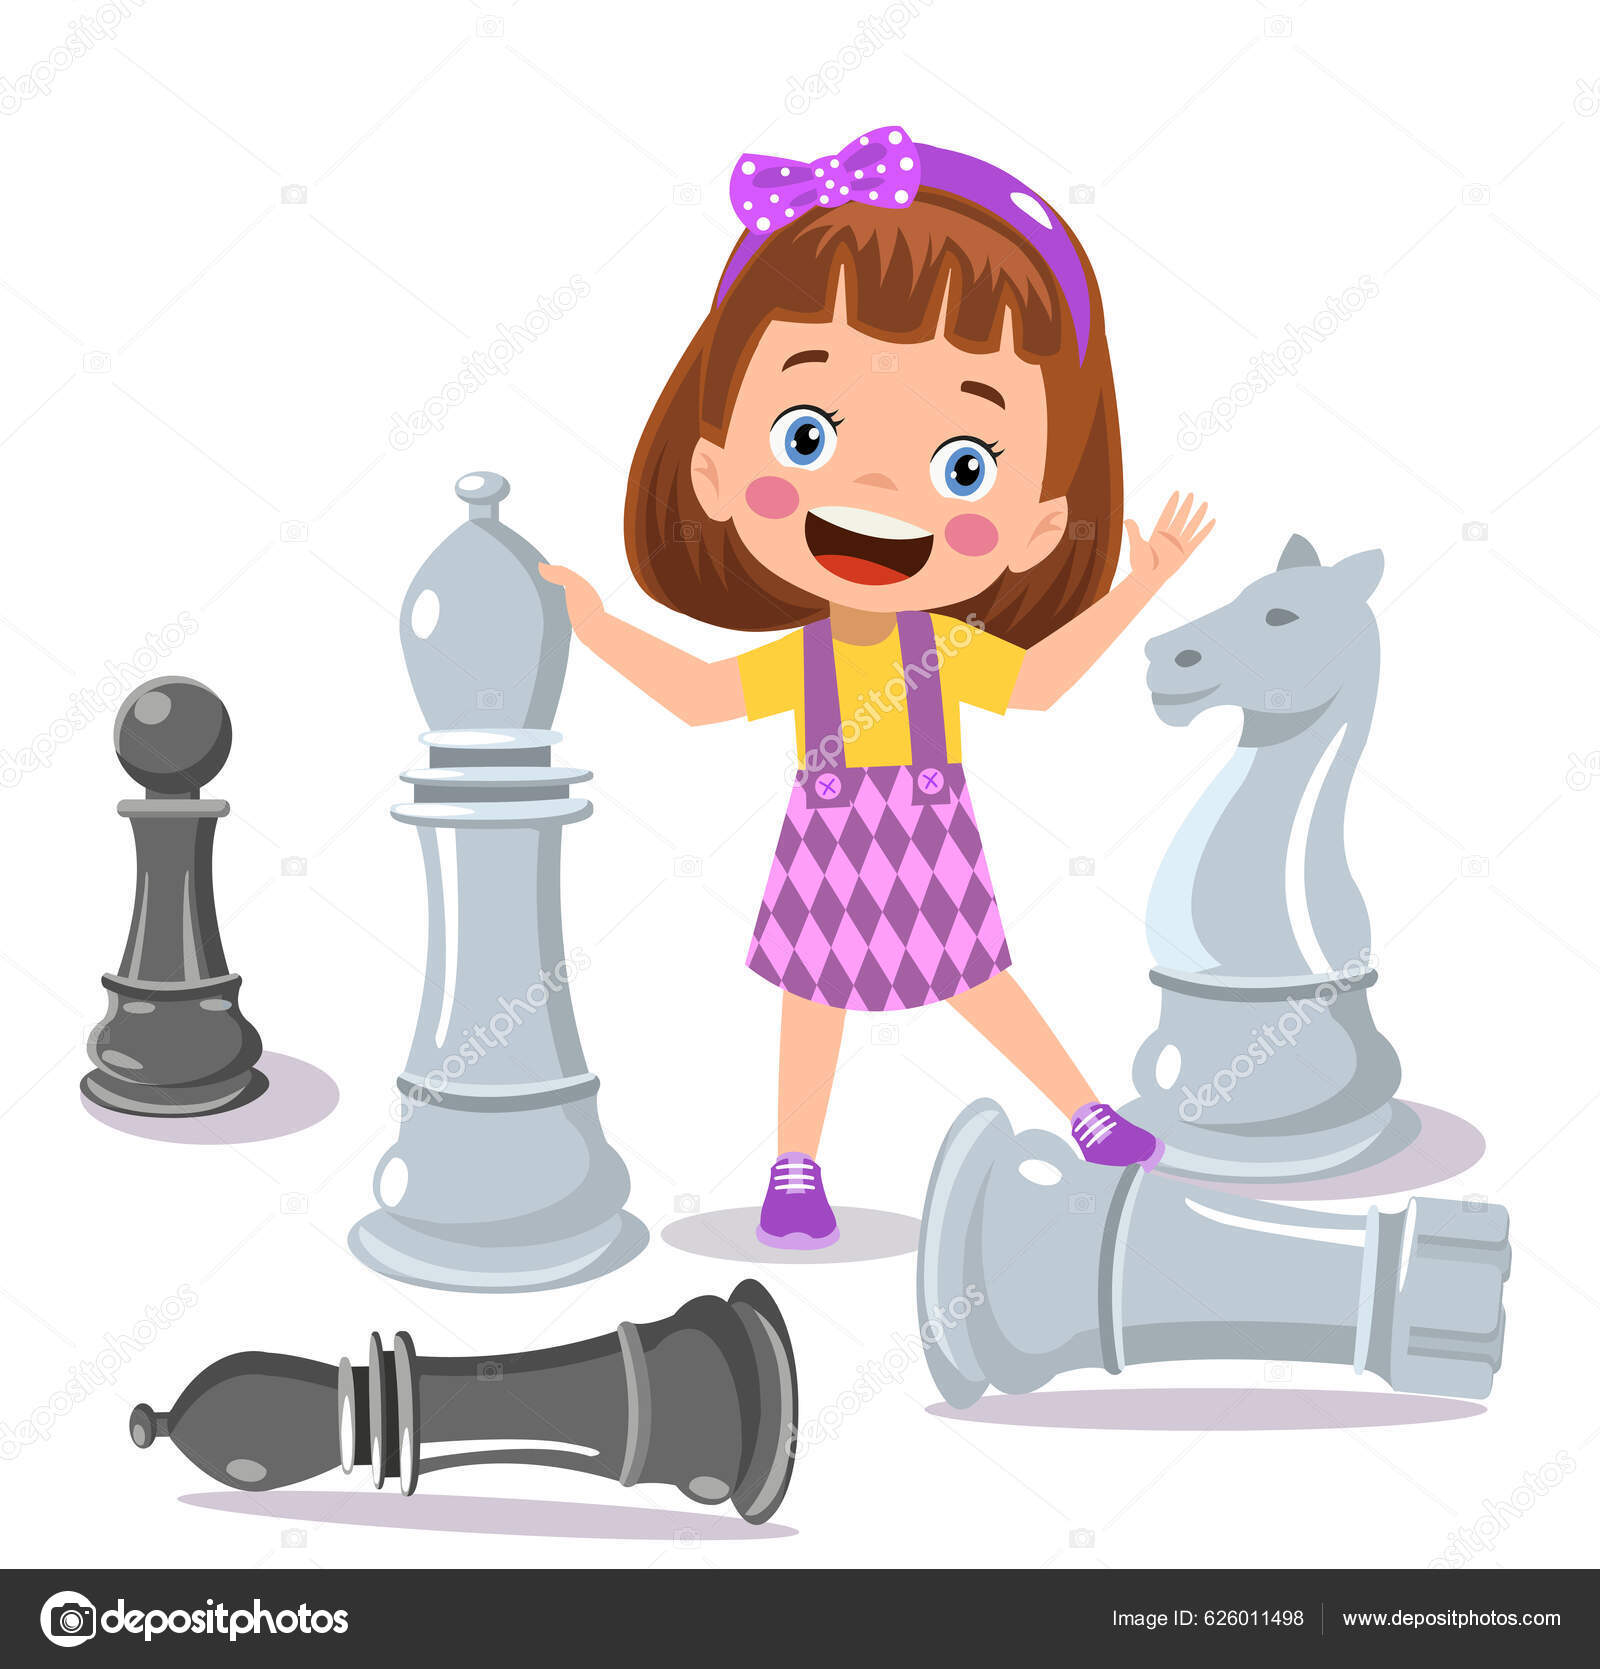 Cavalo de xadrez livre de direitos Vetores Clip Art ilustração